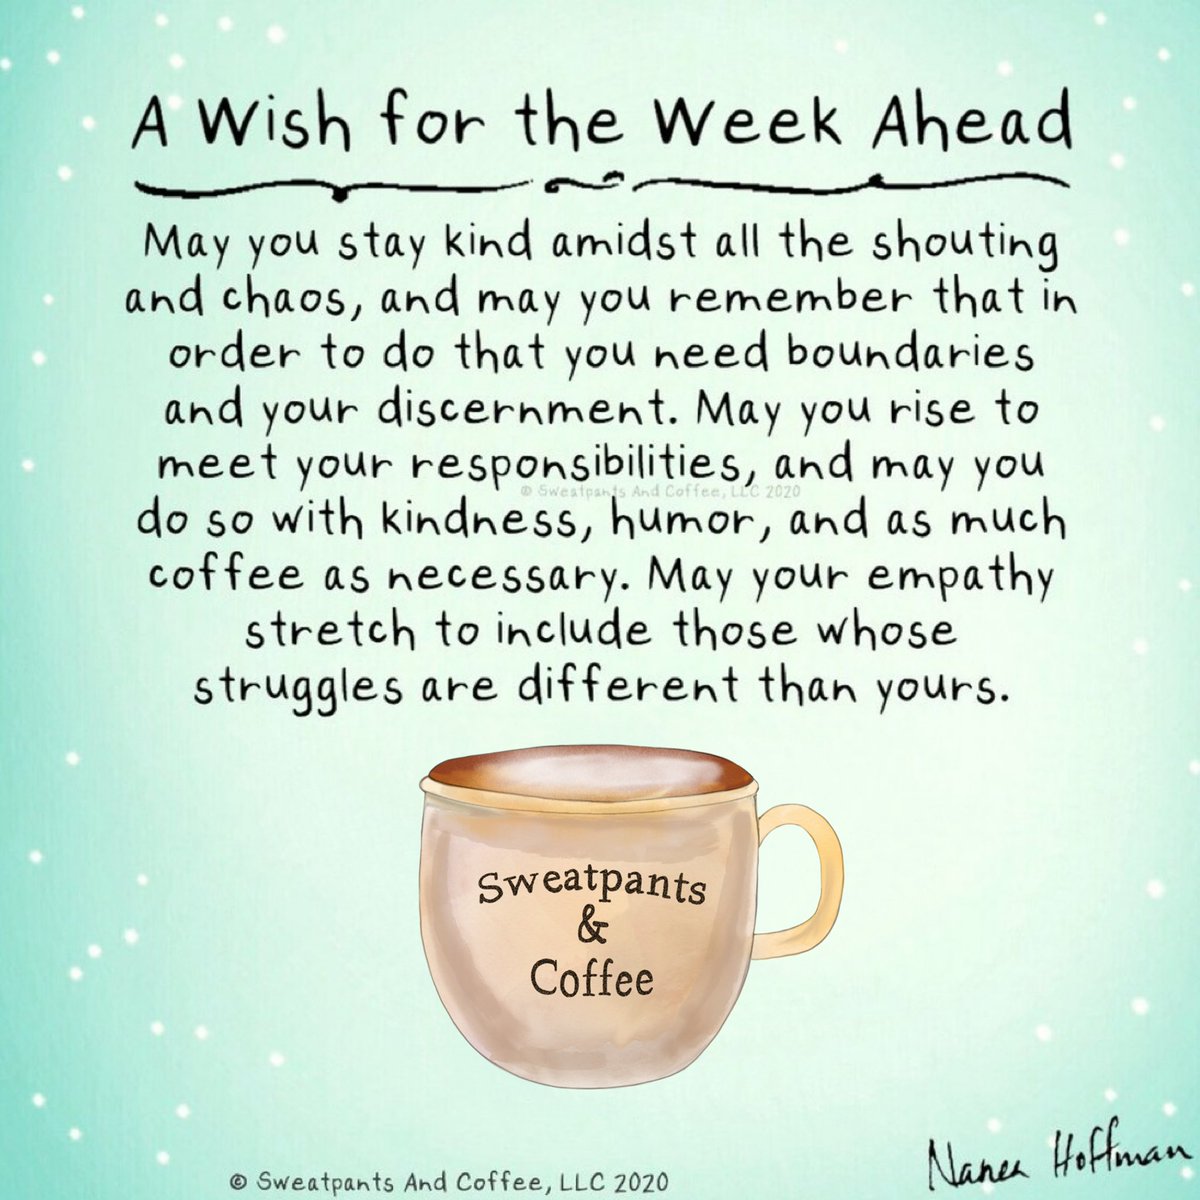 A wish for the week ahead 💙 ~ Nanea